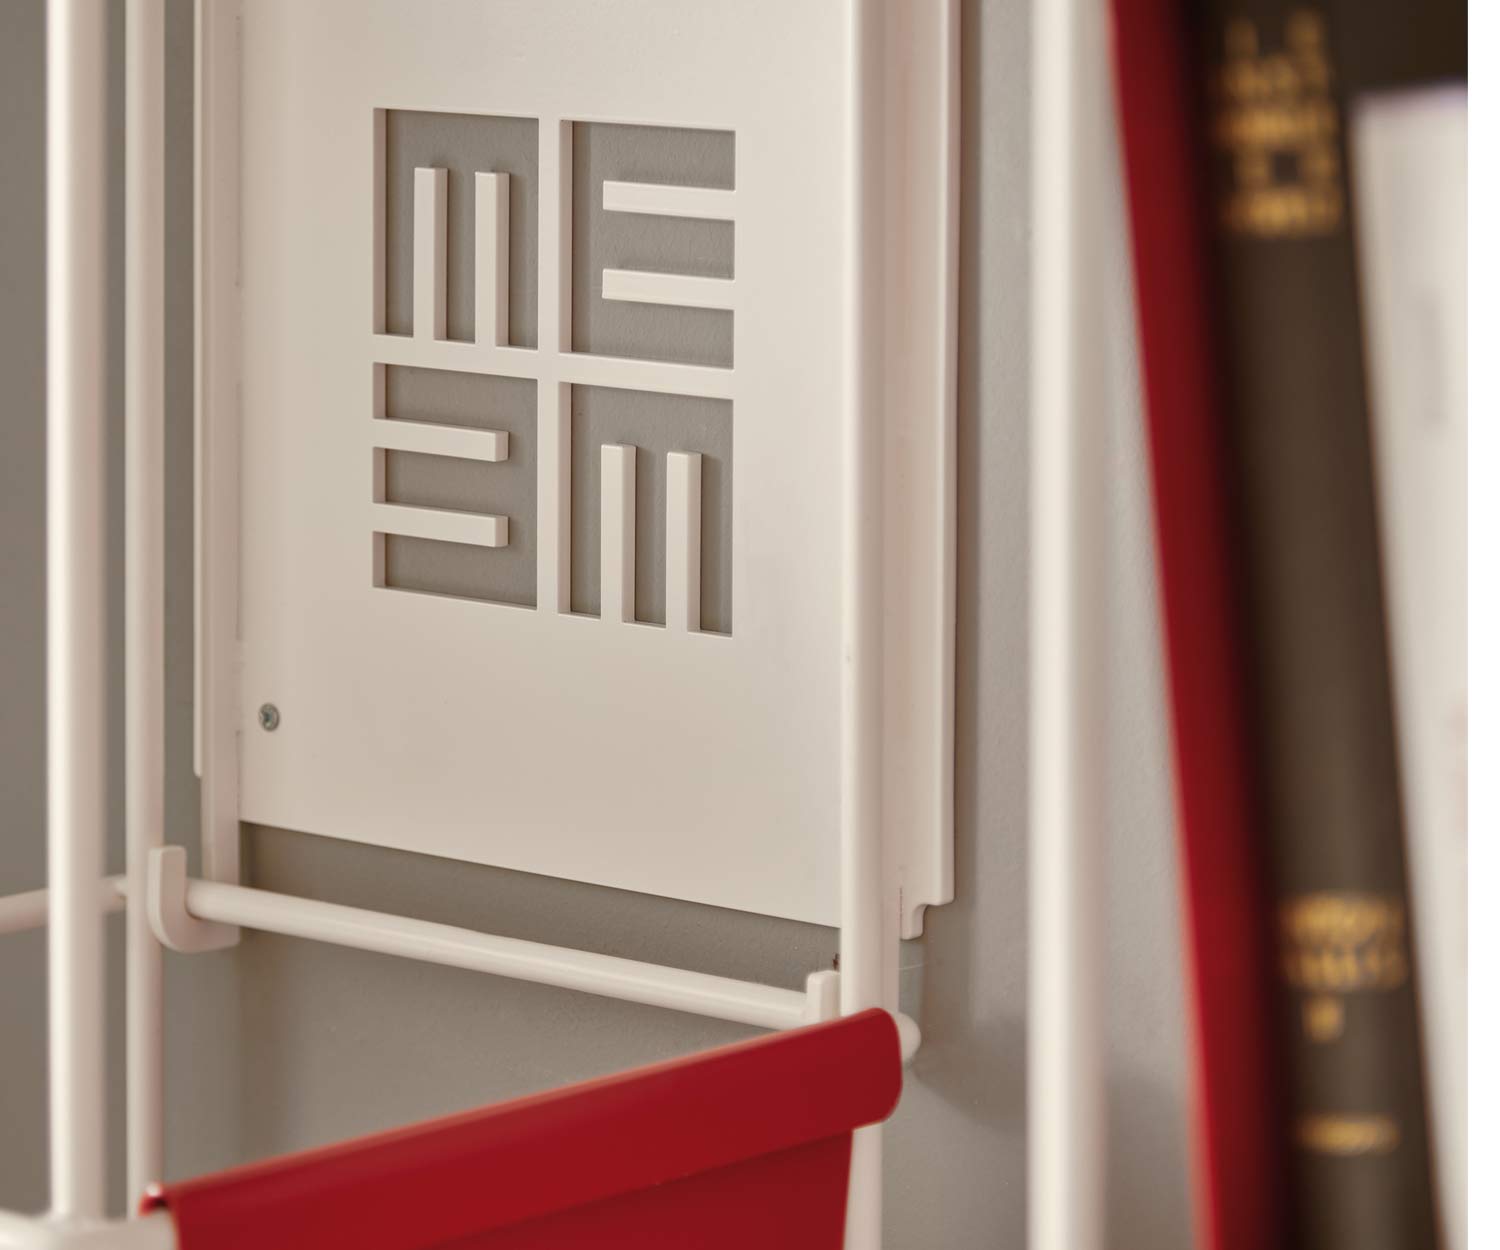 MEME DESIGN Libro vertical wall bookcase with MEME logo